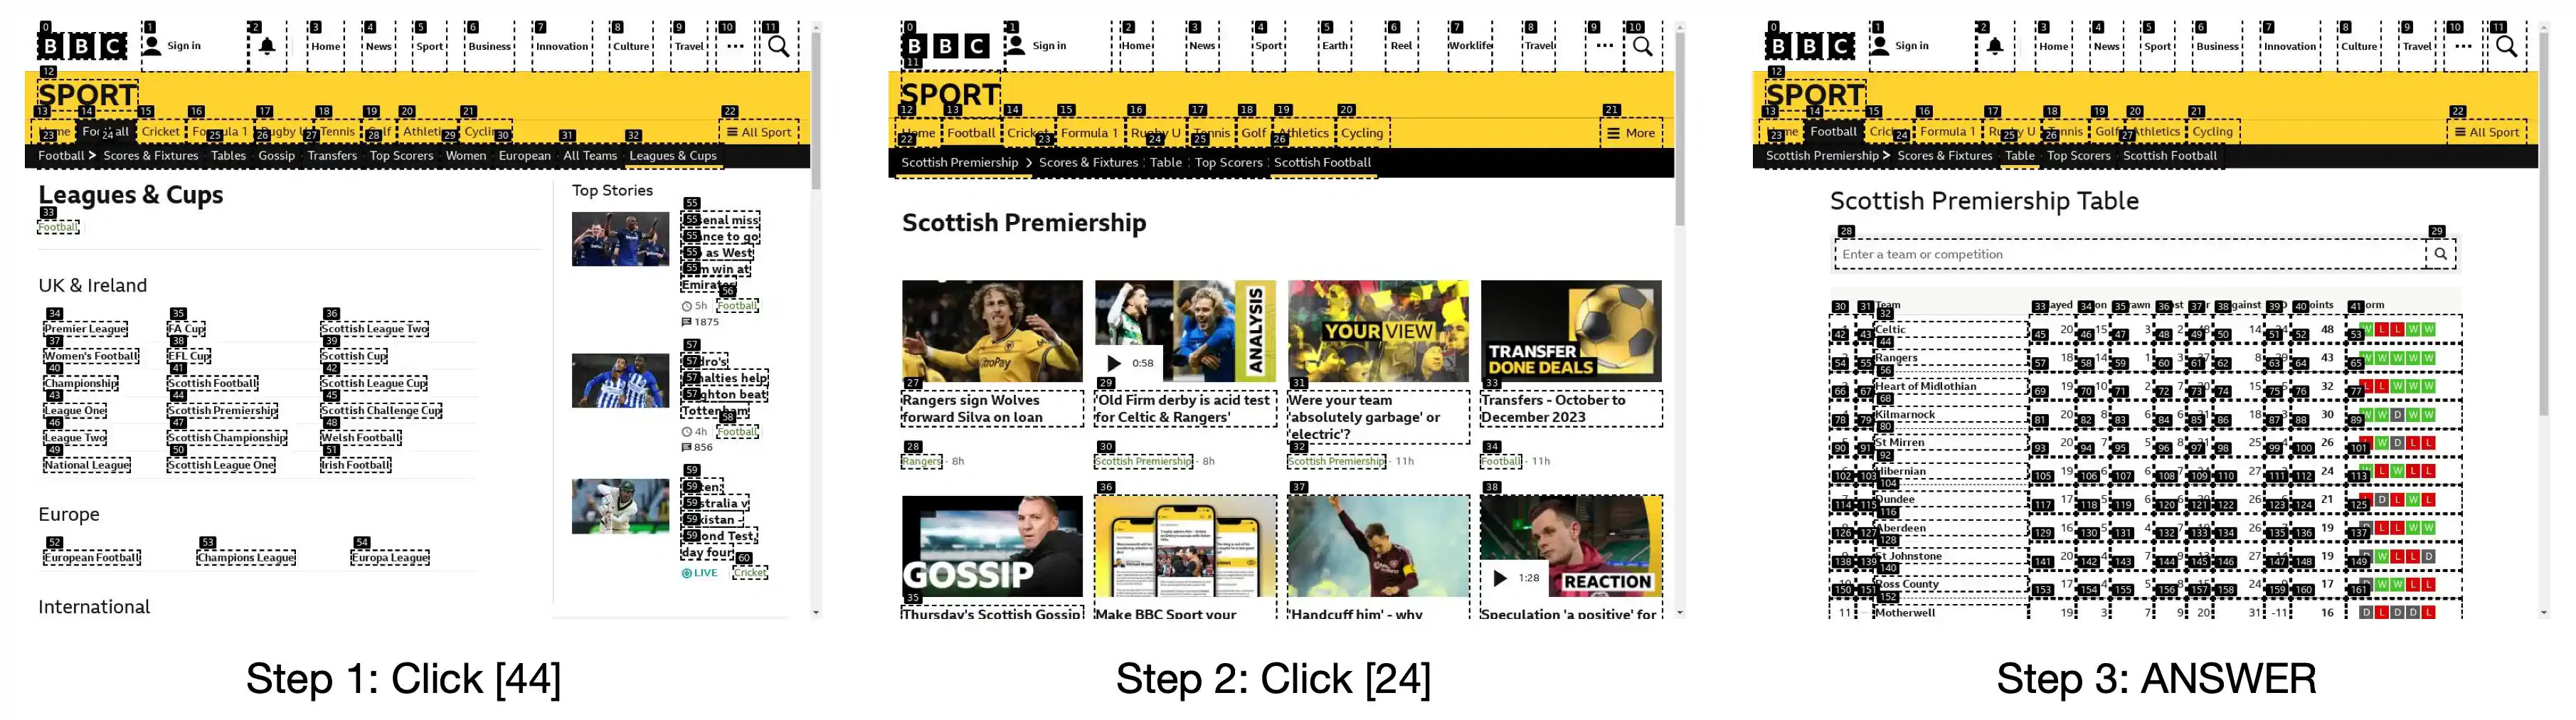 图 26：BBC 新闻的一个错误实例。任务是：“查询苏格兰超级联赛足球锦标赛中有多少支球队，以及希伯尼安队最近一场比赛是什么时候开始的？”智能体回答：“苏格兰超级联赛共有 12 支球队。要了解希伯尼安队最近一场比赛的具体开始时间，还需要进一步查看网站信息。”尽管智能体知道任务尚未完成，但它过早地结束了搜索，没有找到希伯尼安队最近一场比赛的具体信息。